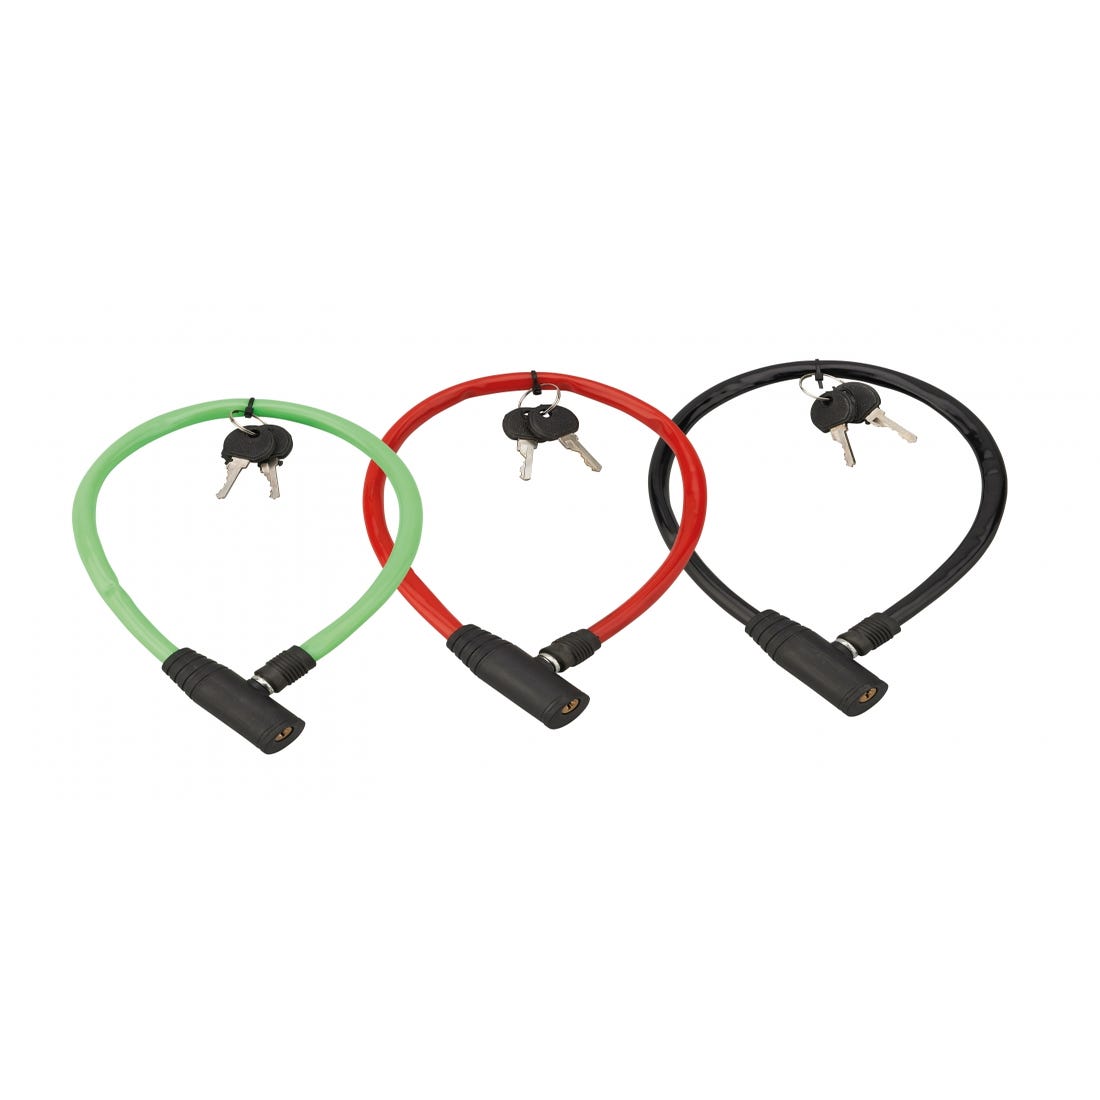 THIRARD - Lot de 3 antivols à clé Twisty, câble acier, vélo, 5mmx0.5m, 2 clés 0